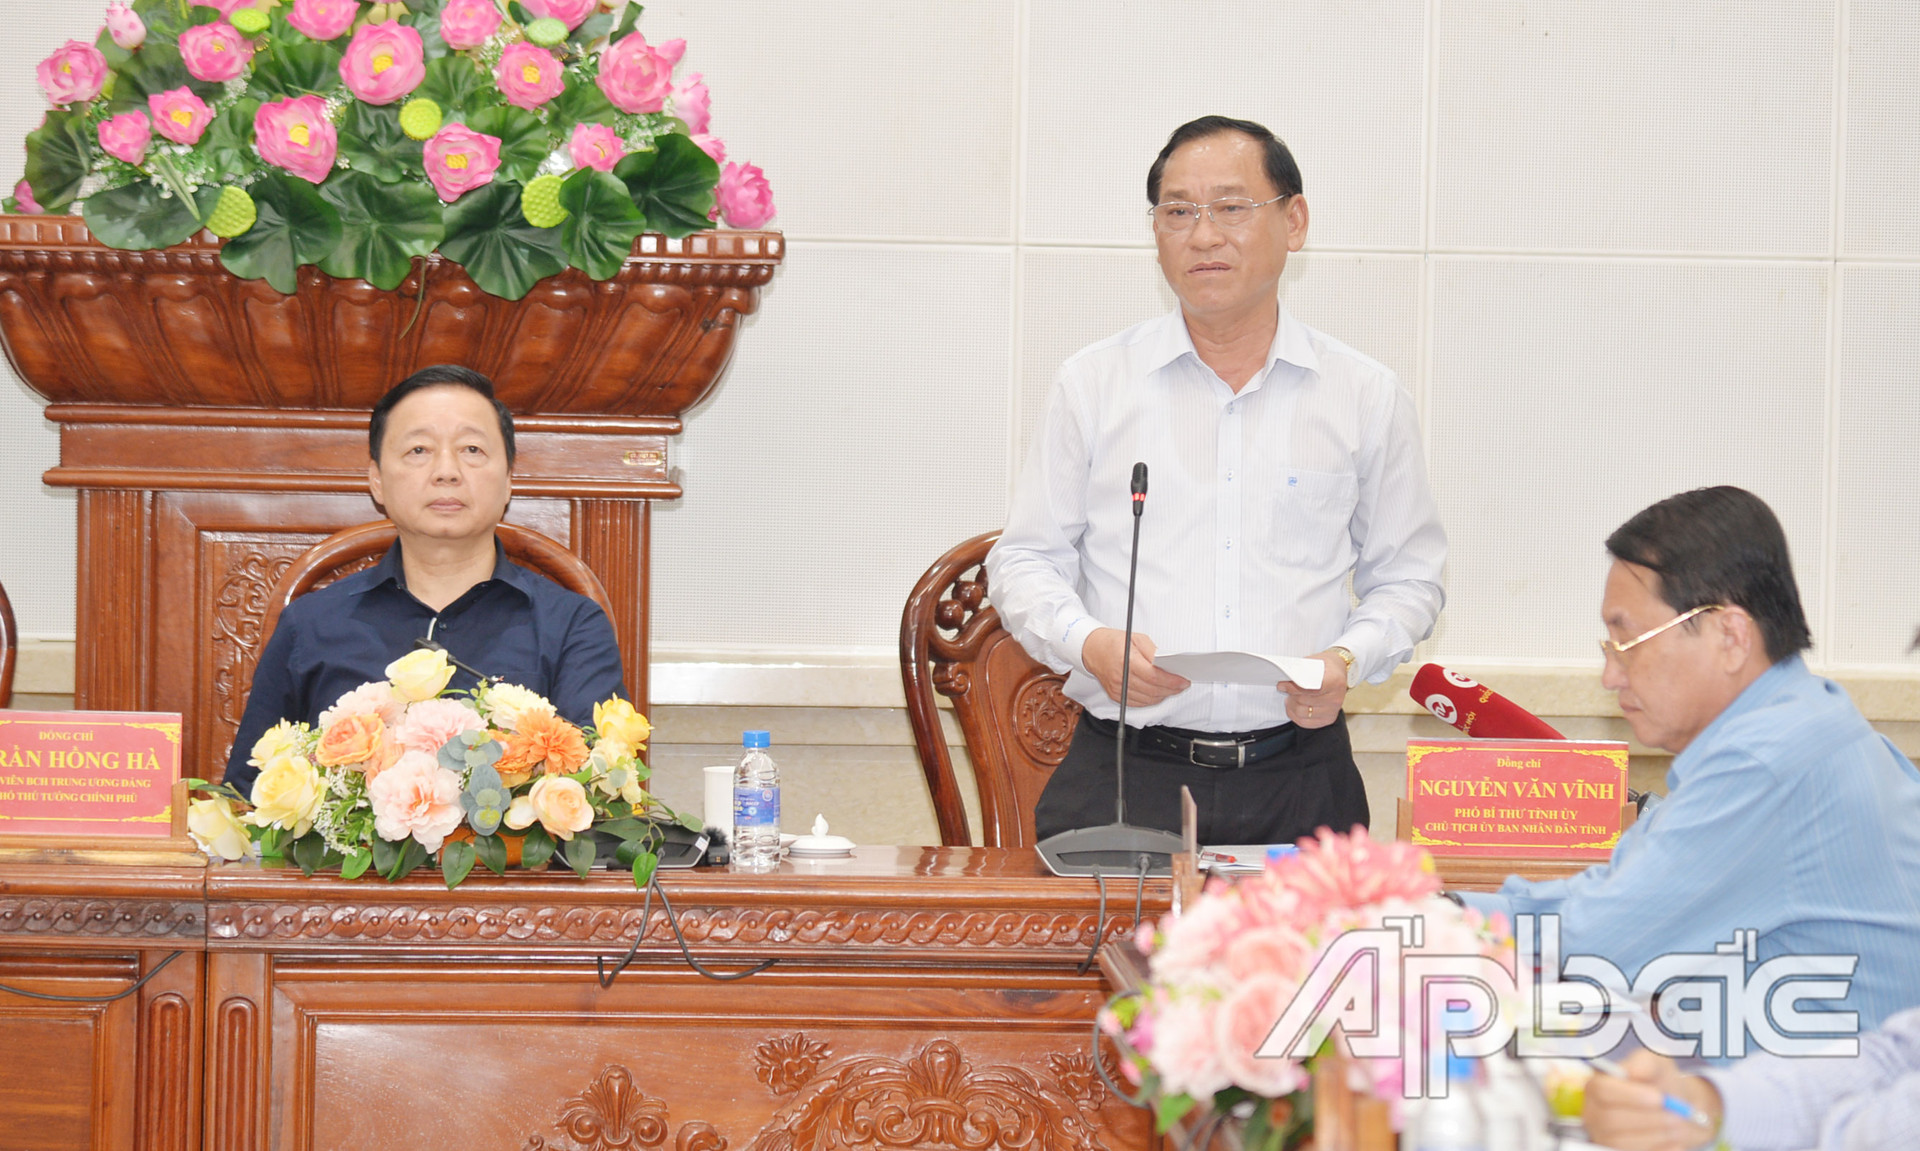 Đồng chí Nguyễn Văn Vĩnh báo cáo về công tác phòng, chống hạn, mặn trên địa bàn tỉnh Tiền Giang.